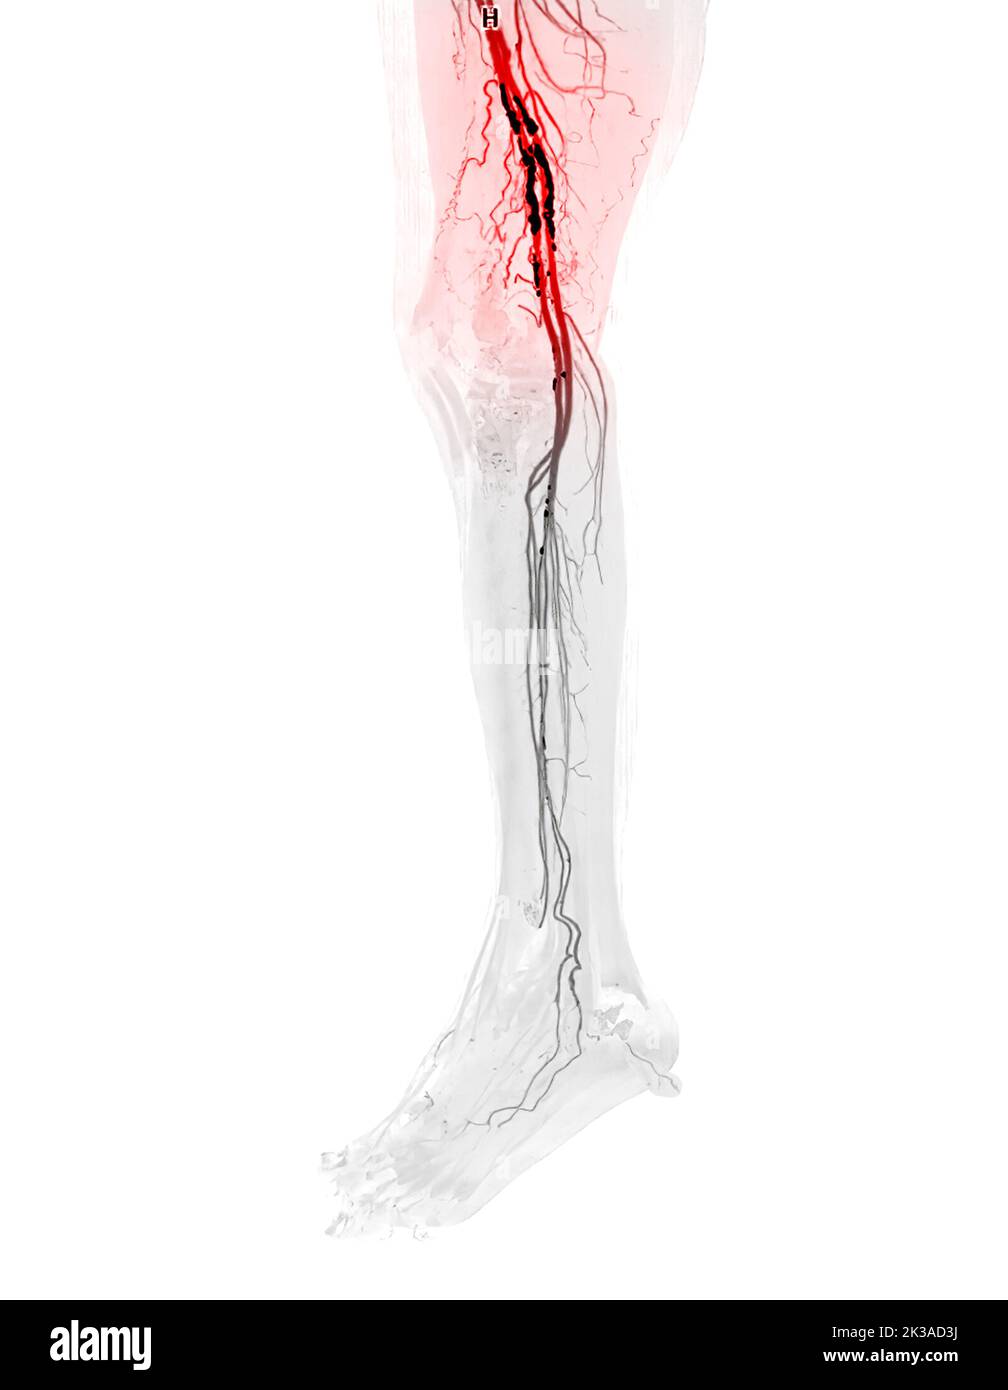 Immagine di scentratura dell'arteria femorale CTA dell'arteria femorale che presenta una malattia arteriosa periferica acuta o cronica. Foto Stock